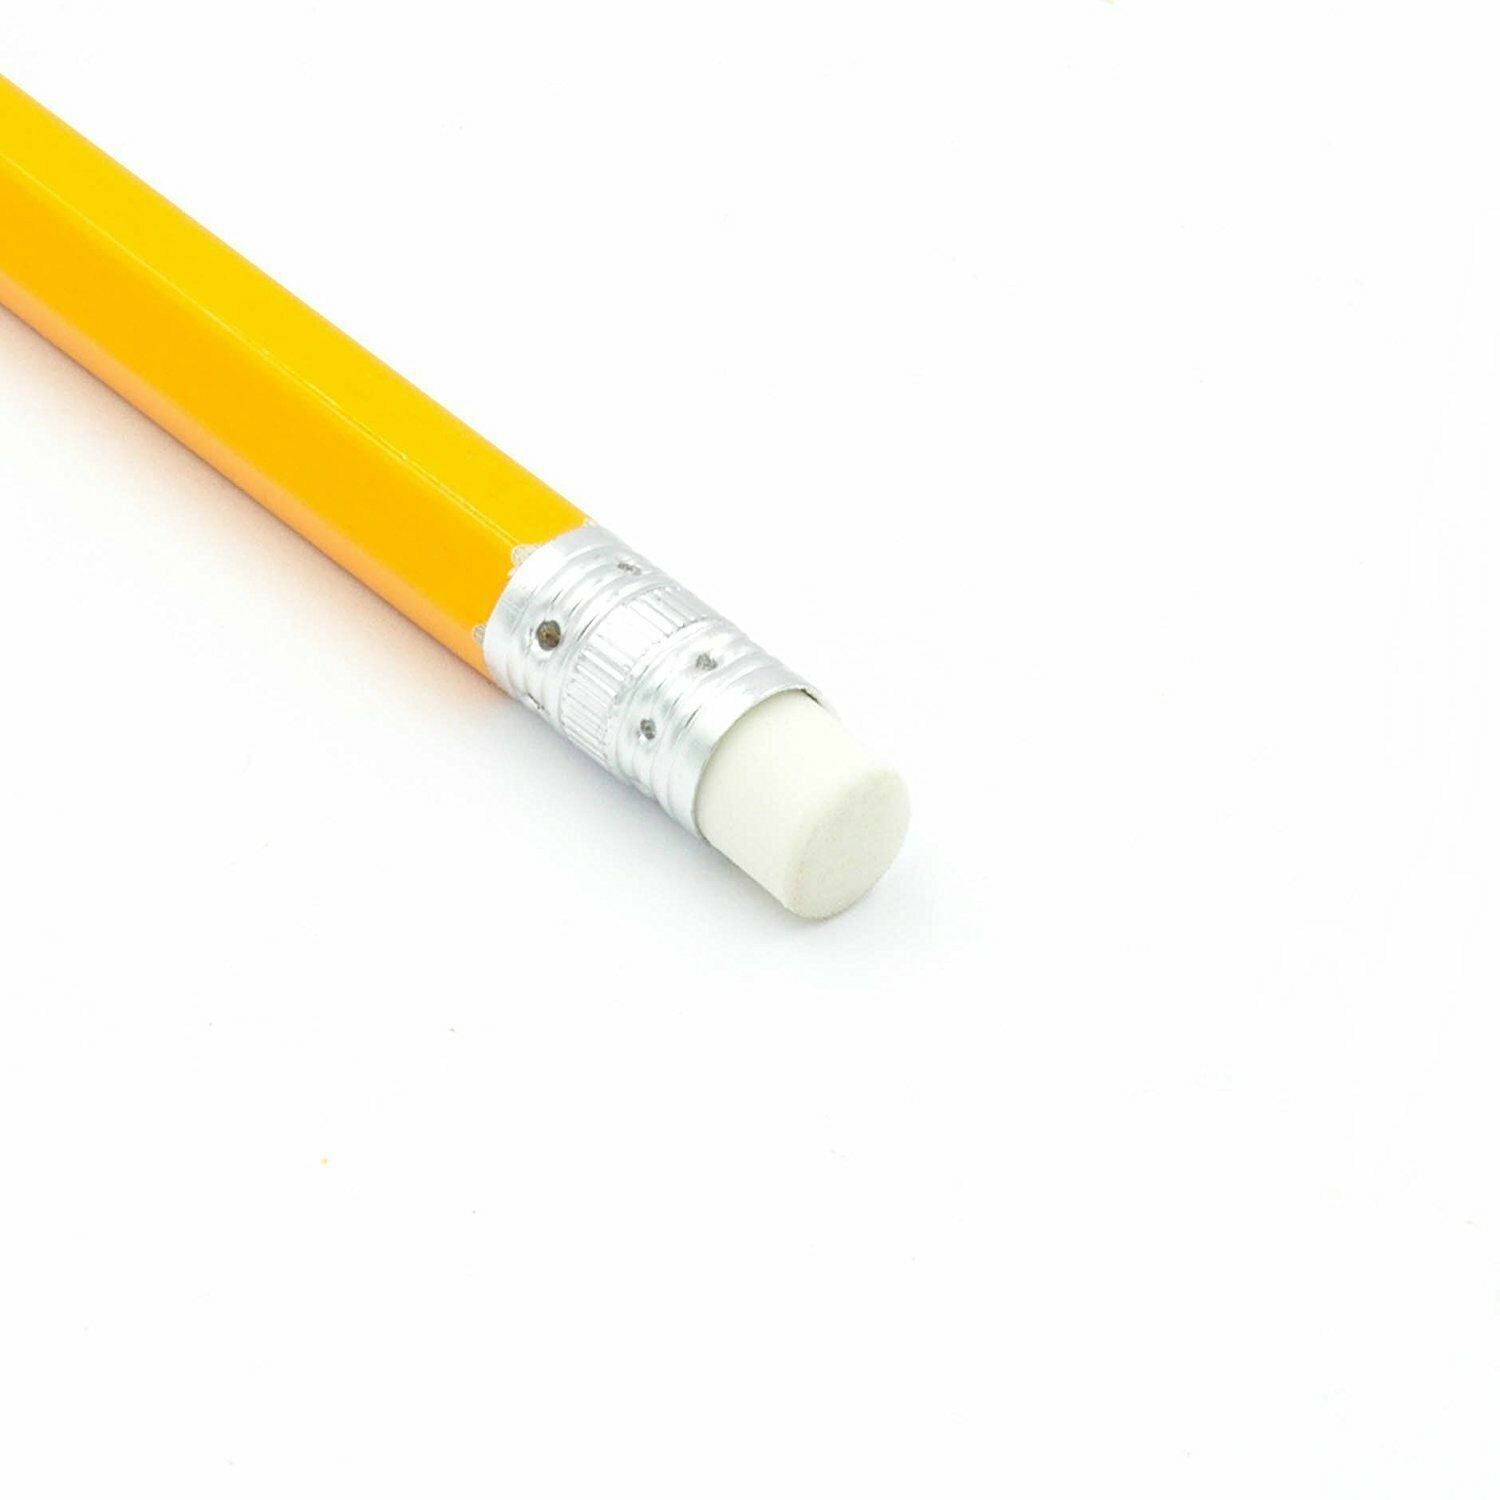 Beclen Harp 15-150 HB Pencils With Eraser Top Office School Craft Art Drawing Break-Resistant Creative Lead Pencils